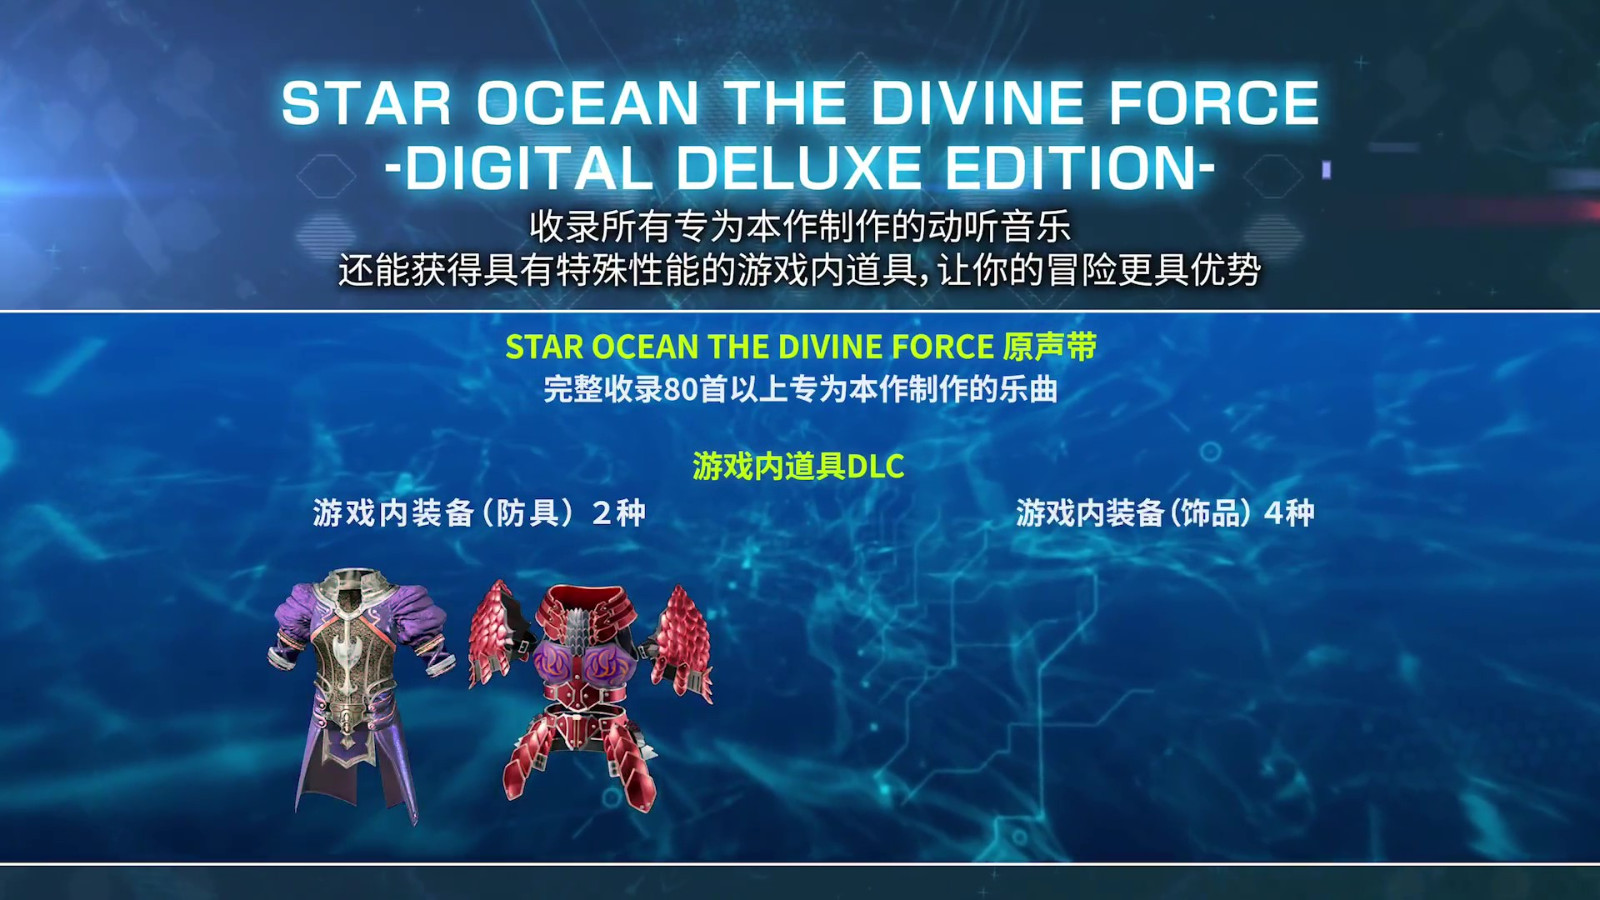 《星之海洋6 神圣力量》角色预告 10月27日发售